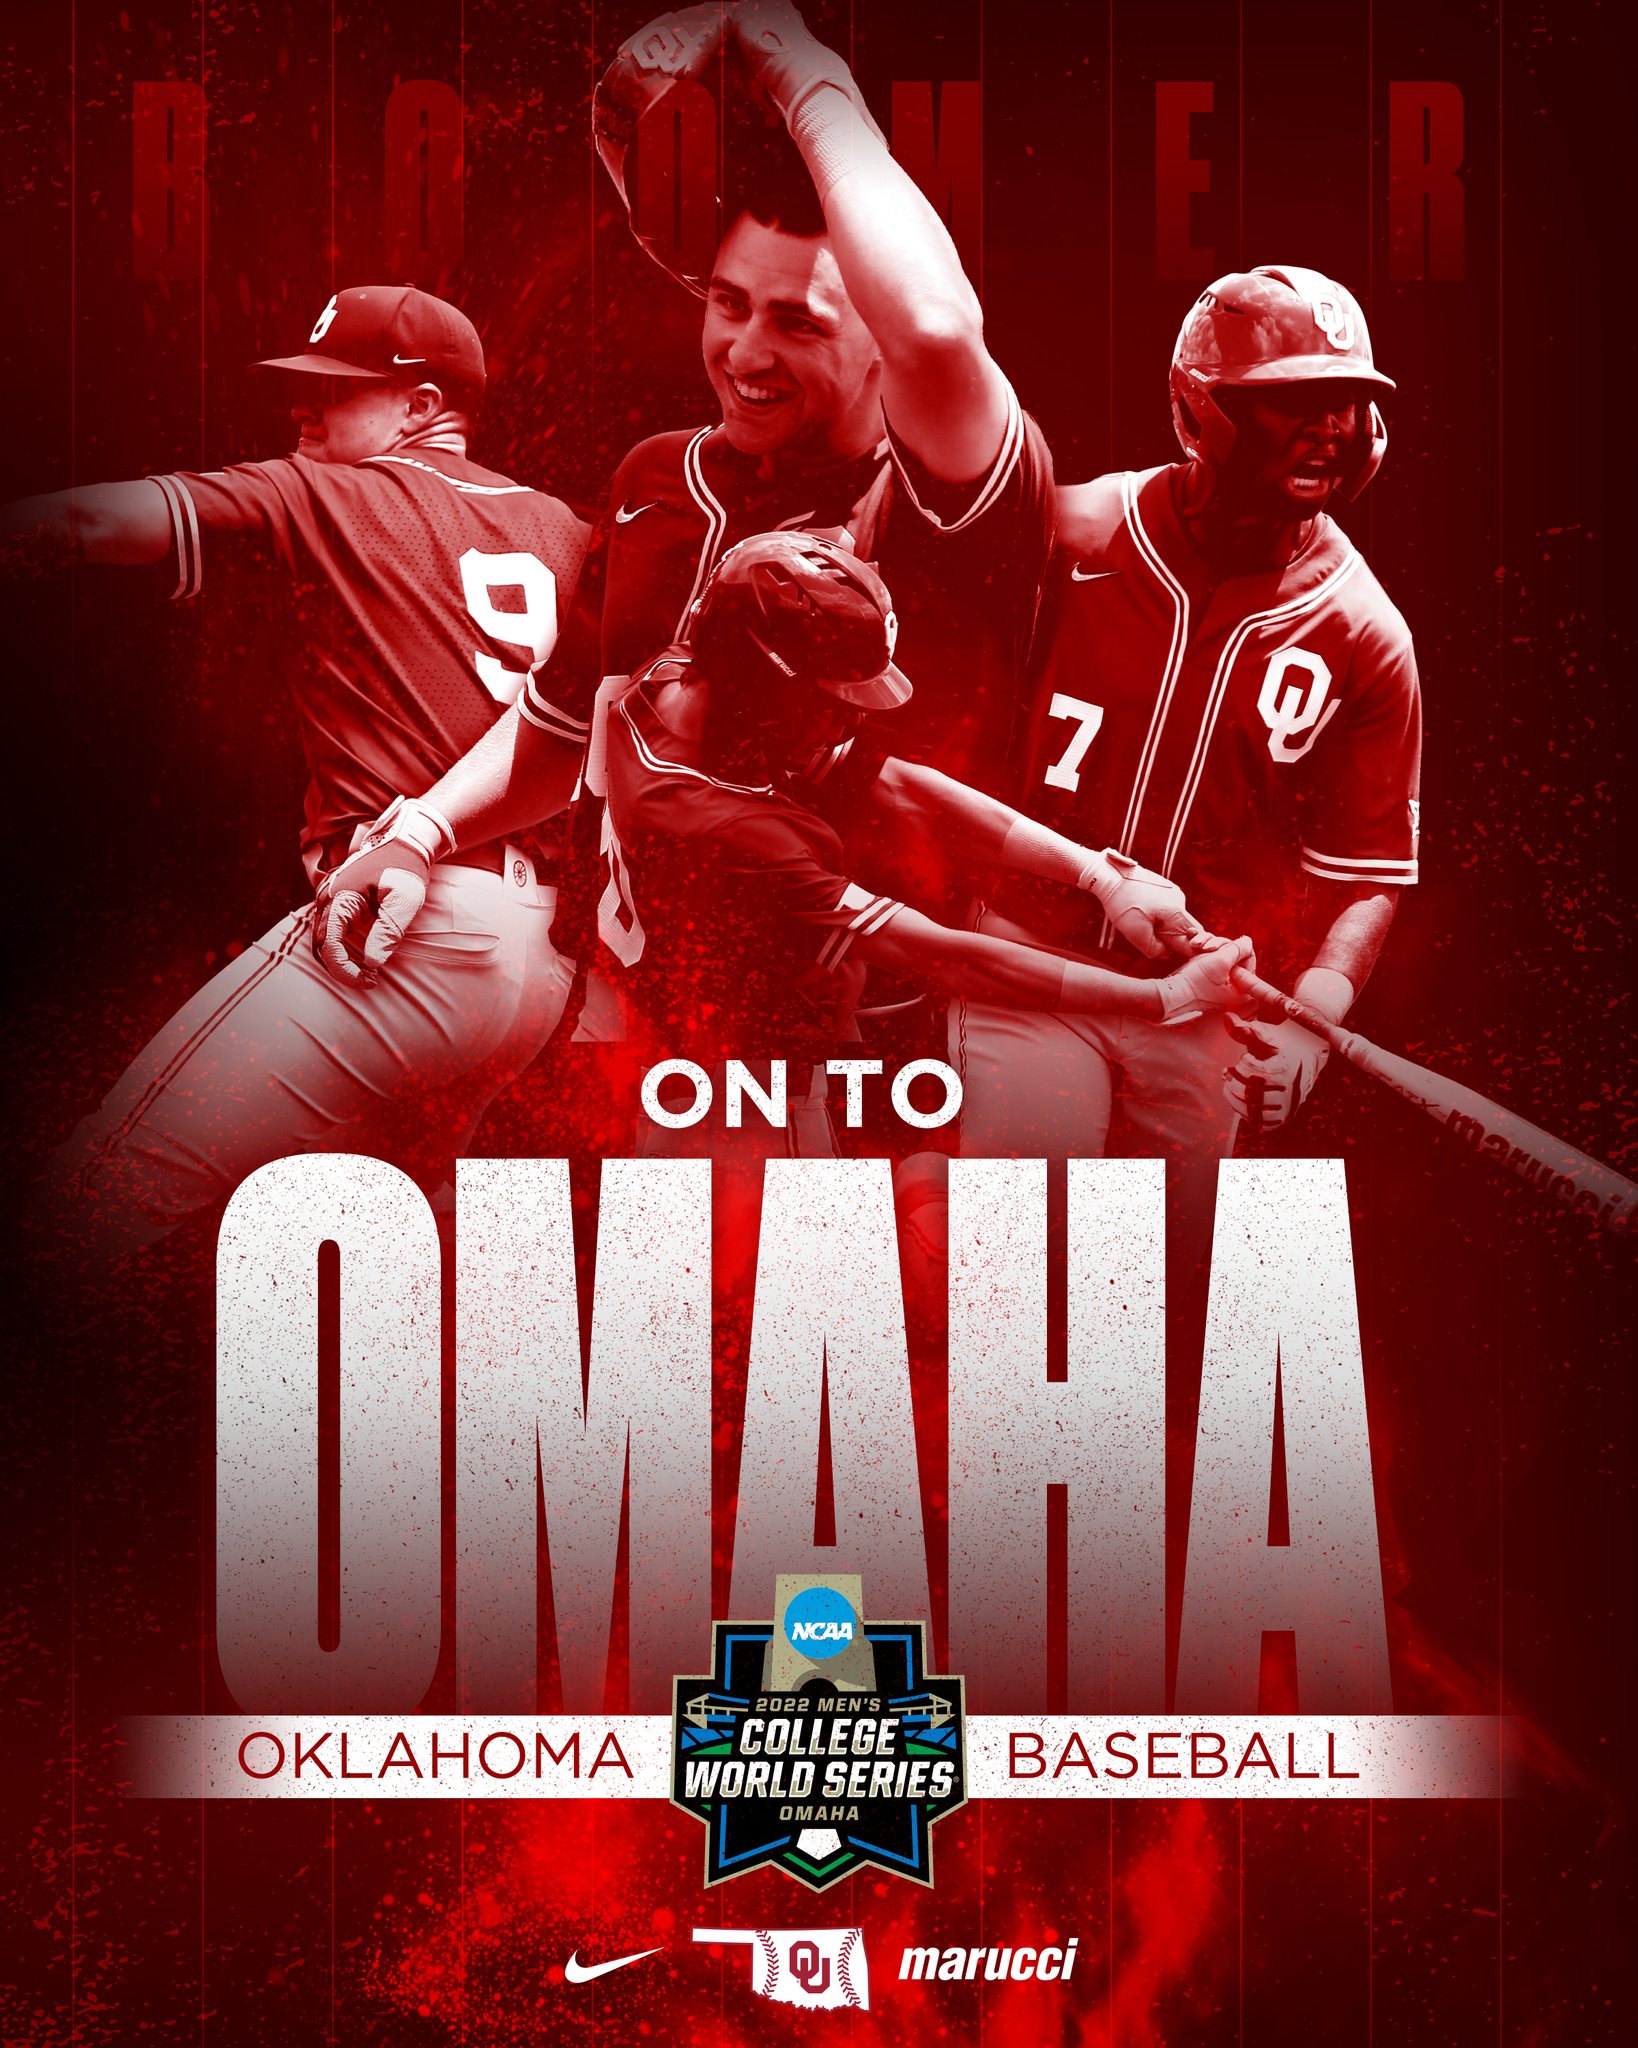 Oklahoma Baseball on Twitter "𝙎𝙚𝙚 𝙮𝙤𝙪 𝙞𝙣 𝙊𝙢𝙖𝙝𝙖! https//t.co